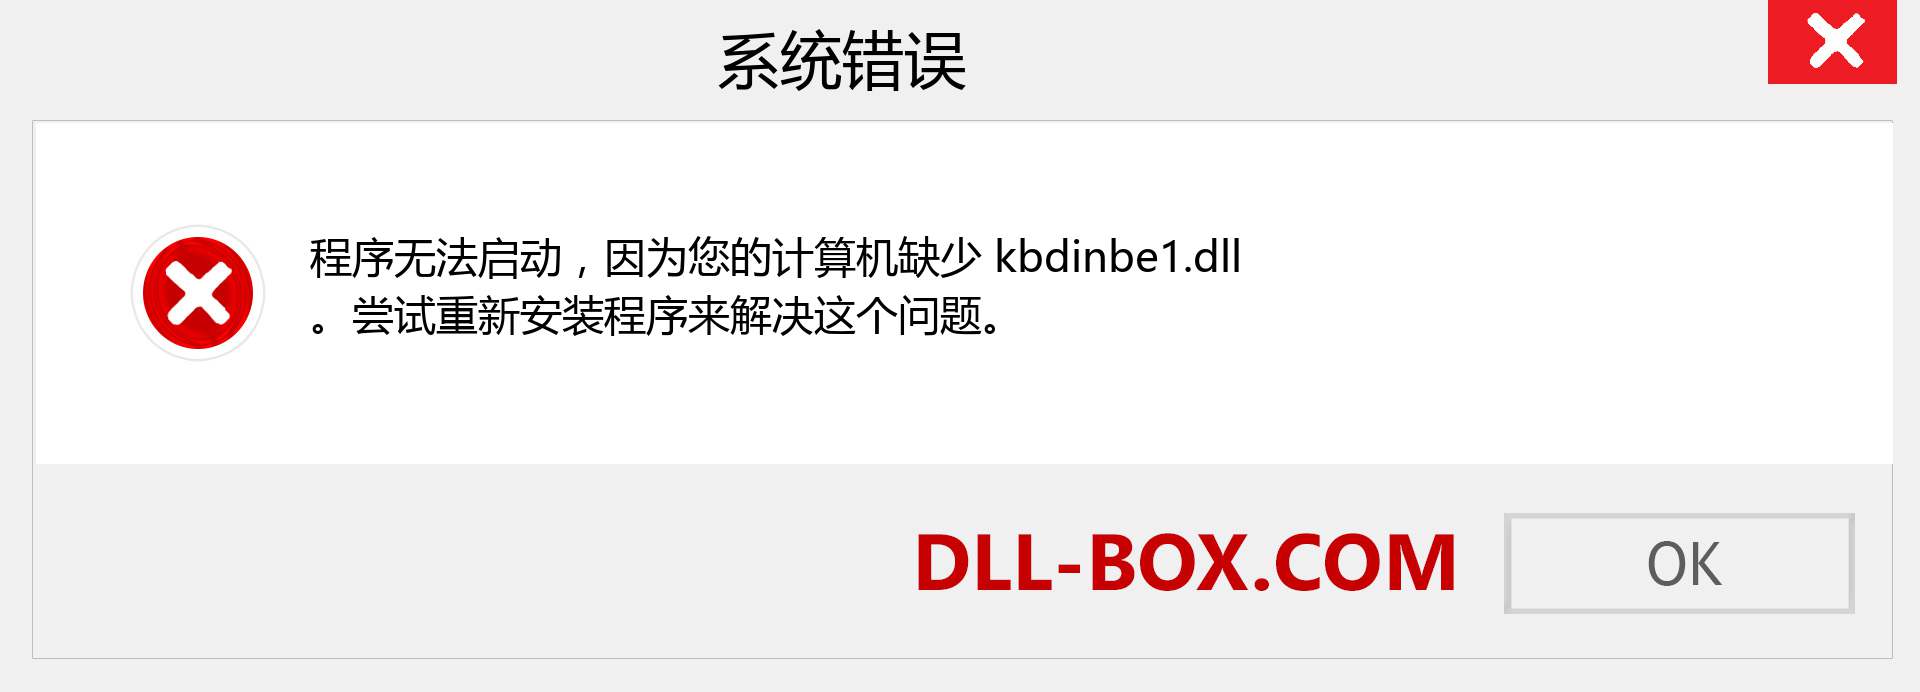 kbdinbe1.dll 文件丢失？。 适用于 Windows 7、8、10 的下载 - 修复 Windows、照片、图像上的 kbdinbe1 dll 丢失错误